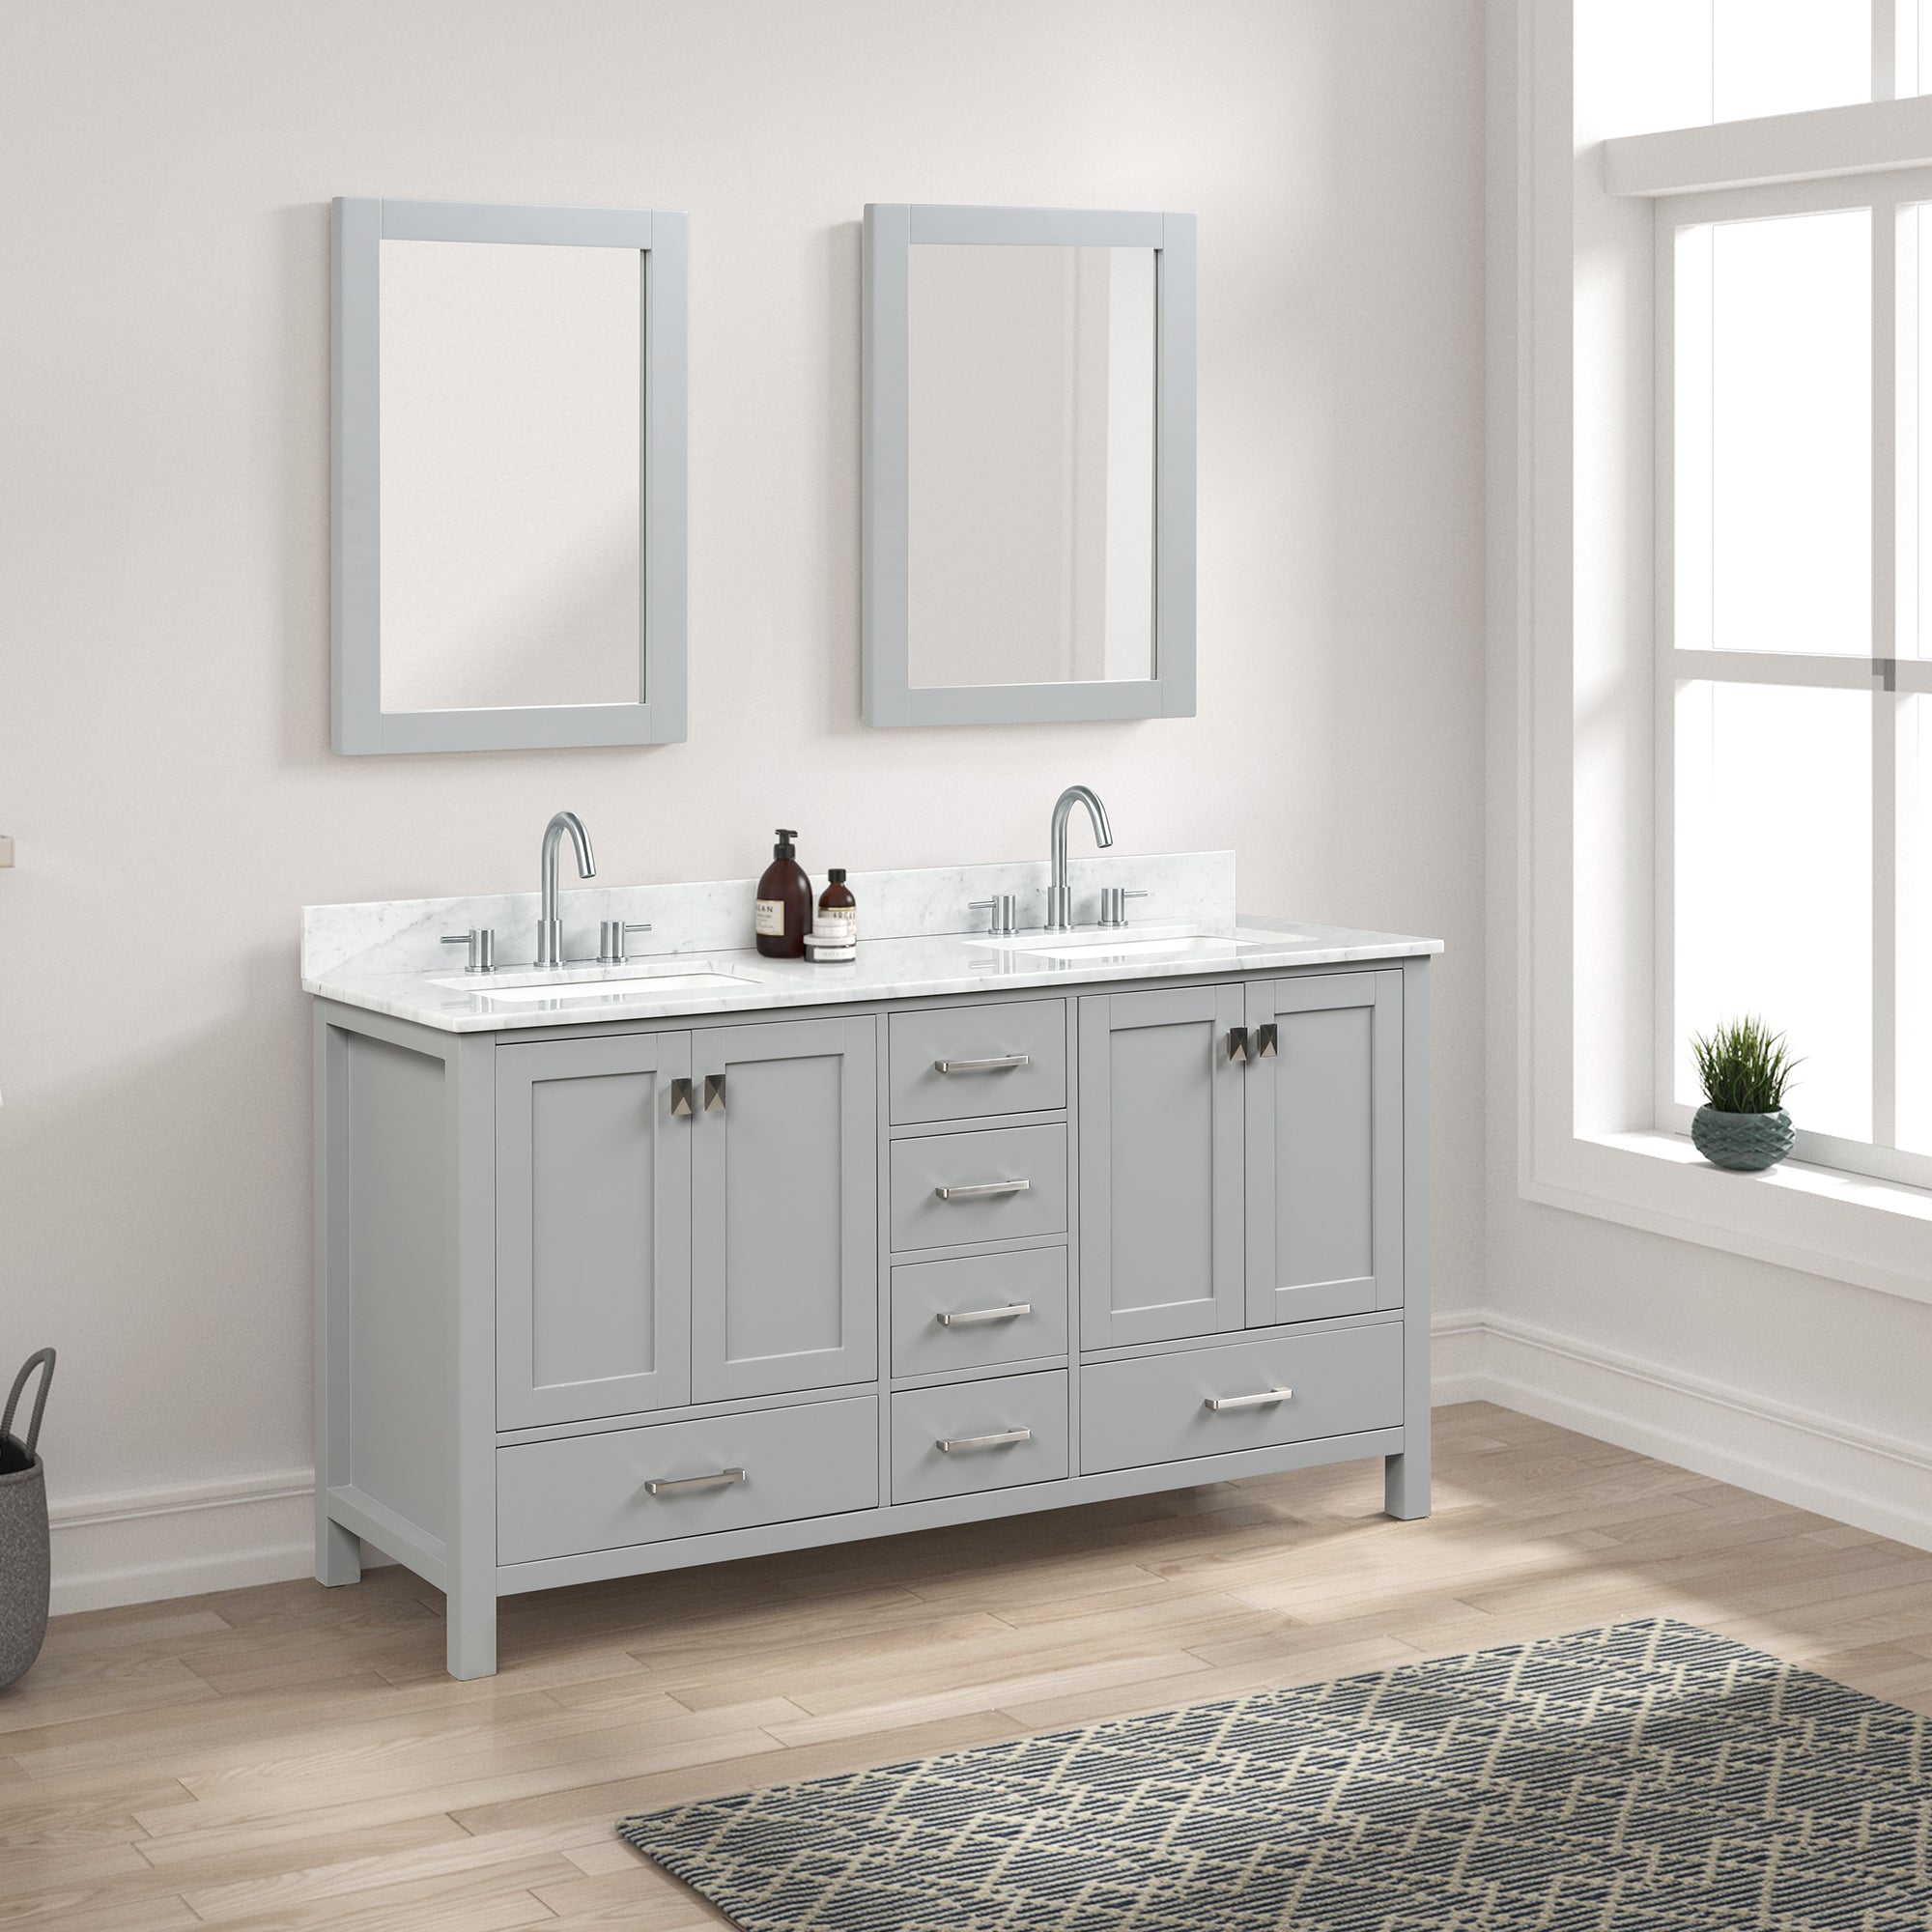 Geneva 60" Bathroom Vanity Double SInk with Marble Countertop - Contemporary Bathroom Vanity